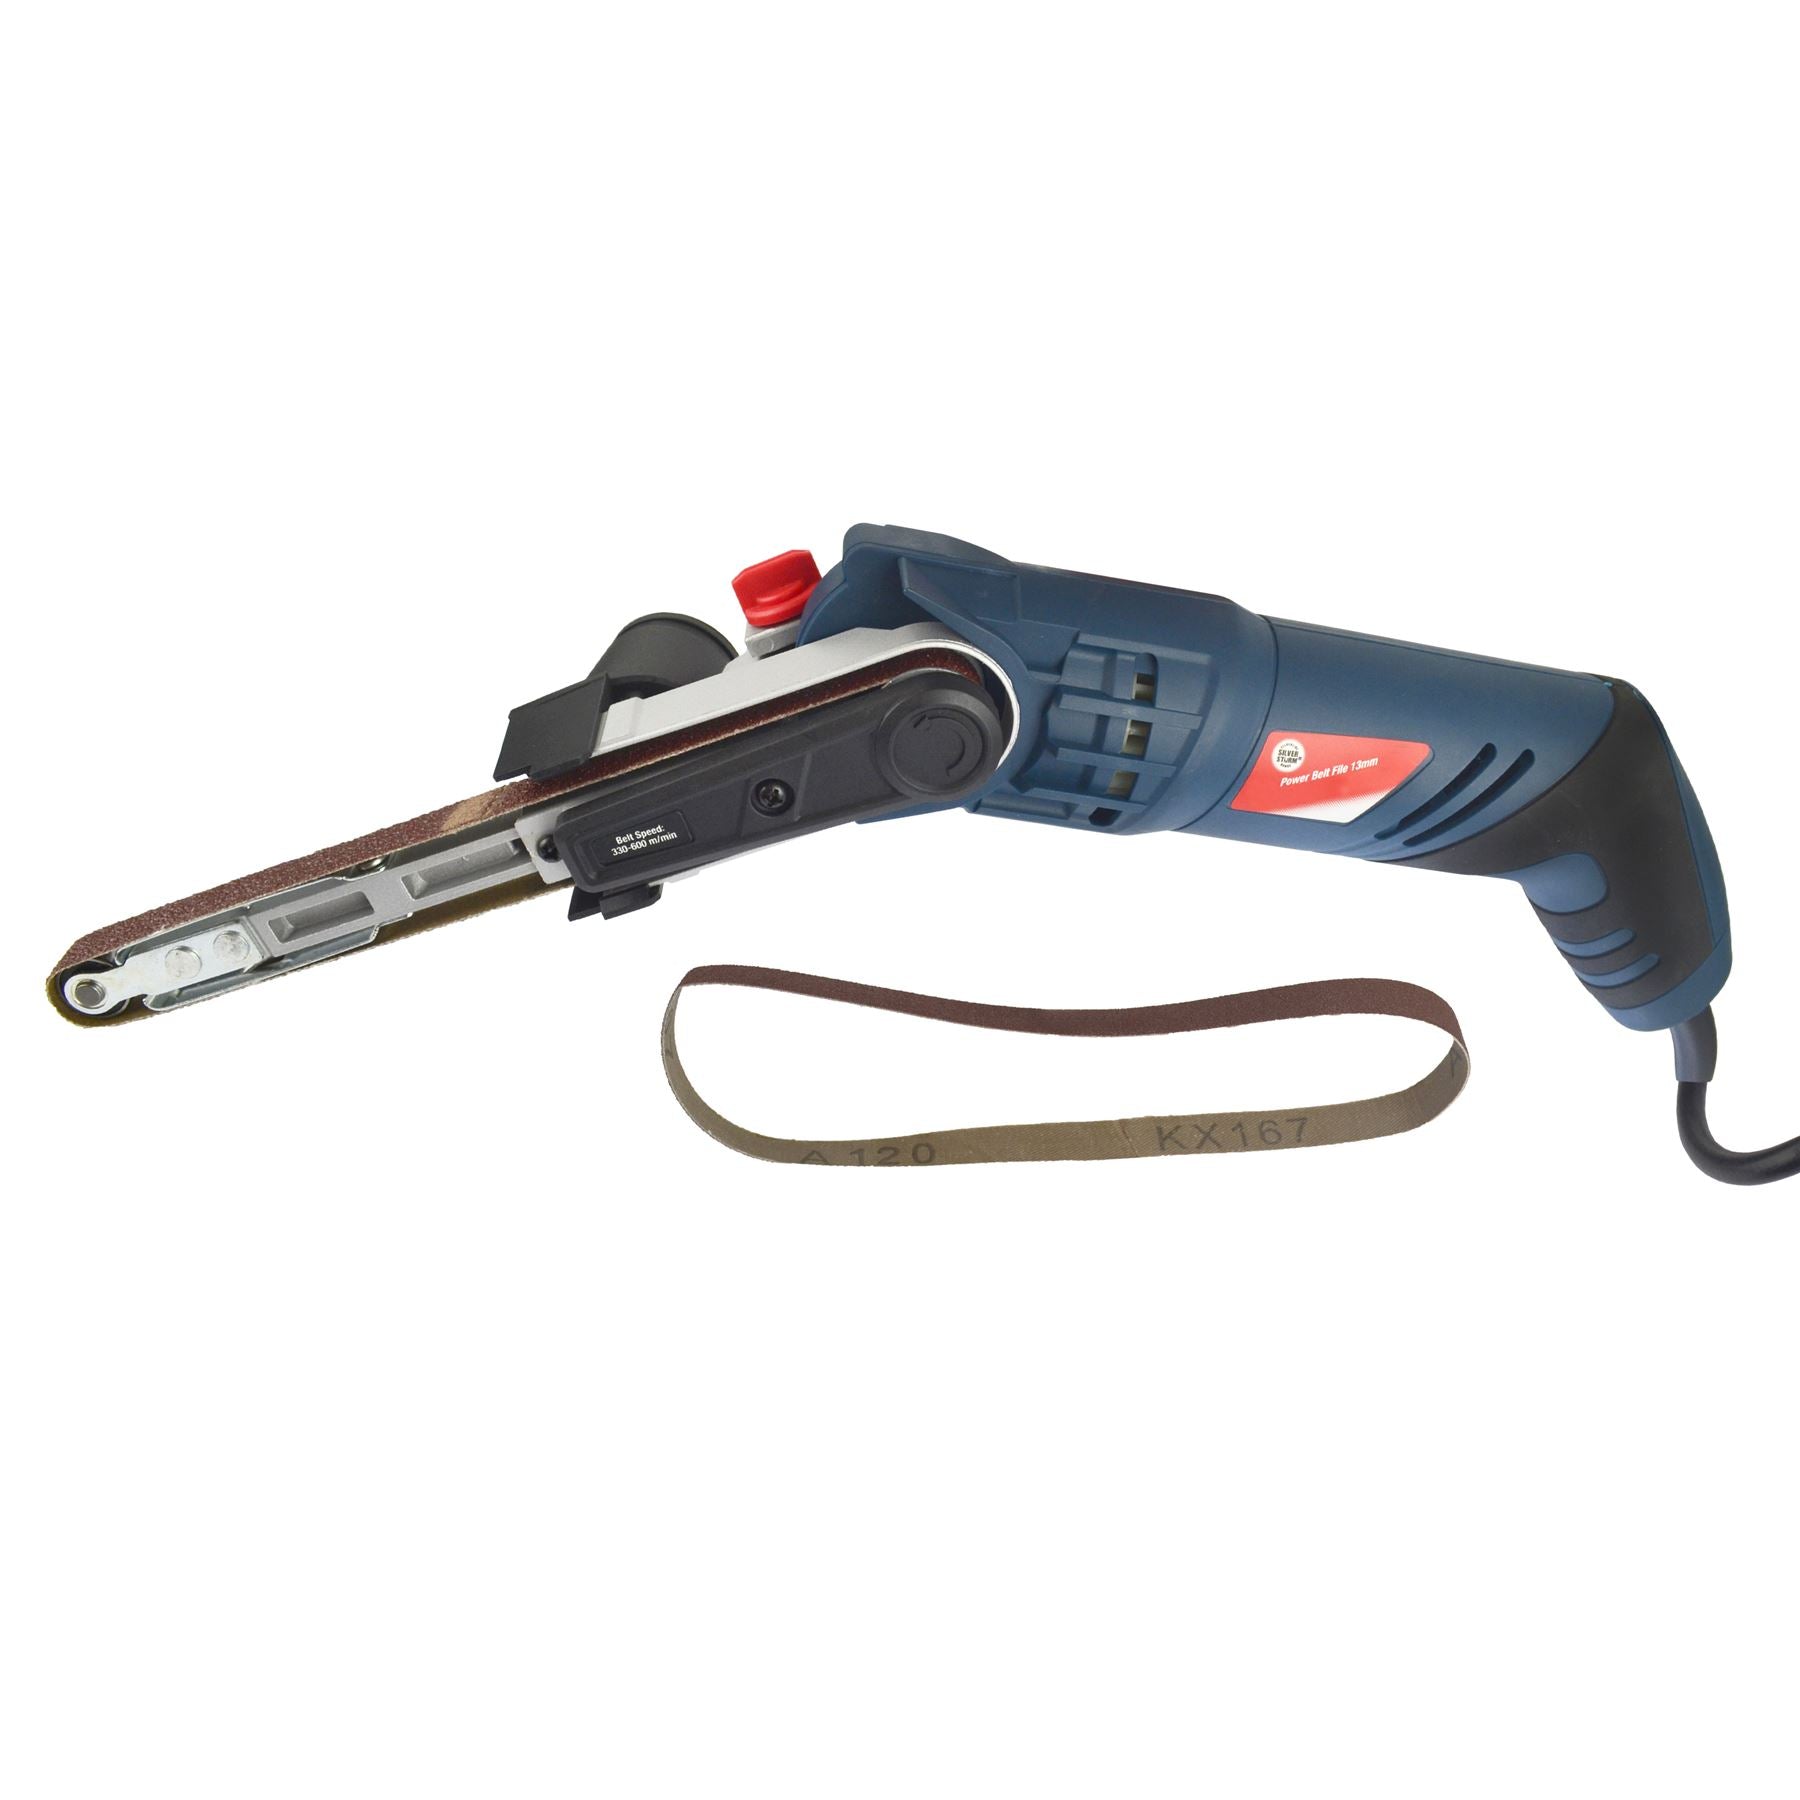 Power File Belt Sander / Finger Electric Sanding Tool With 2 Sanding Belts 13mm x 457mm